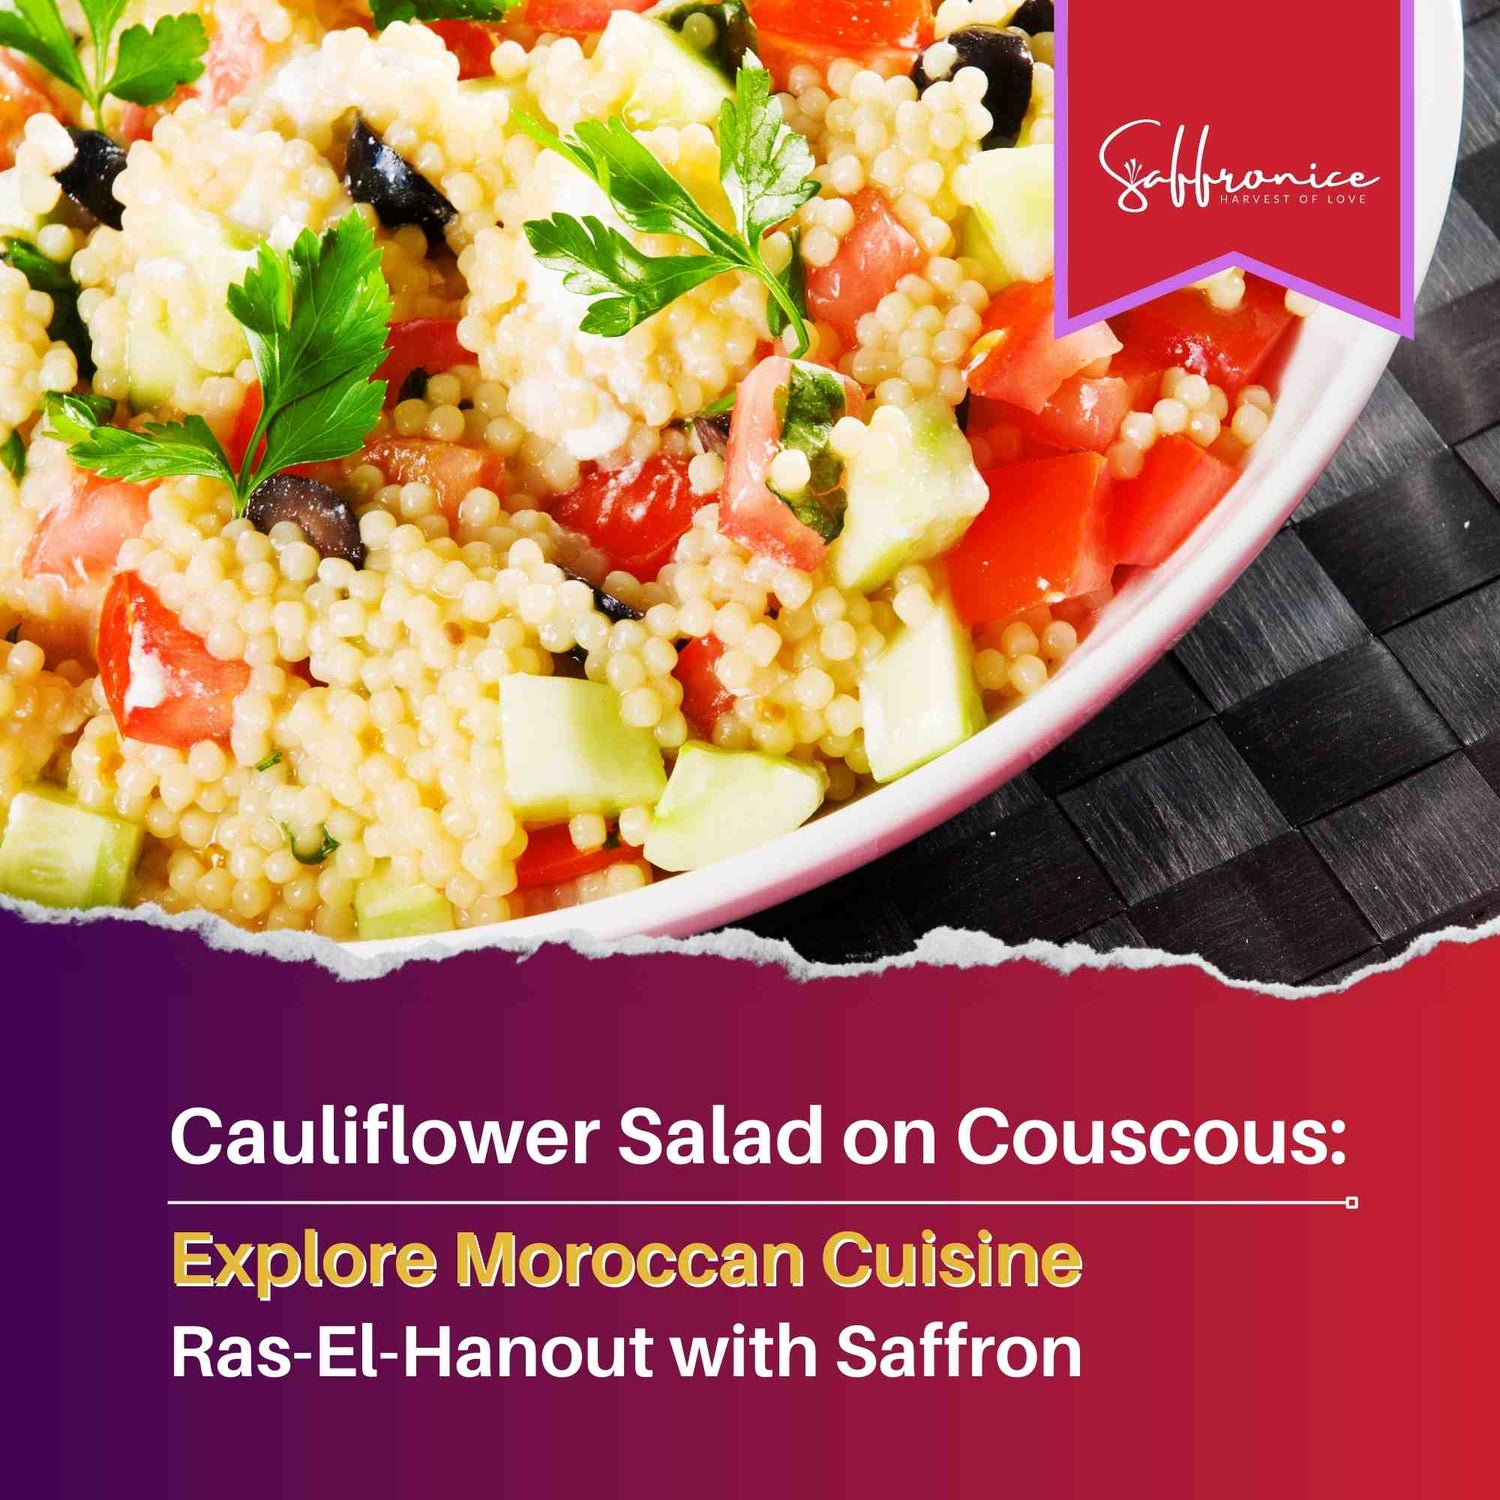 Ras-el-hanout Cauliflower Salad on Couscous